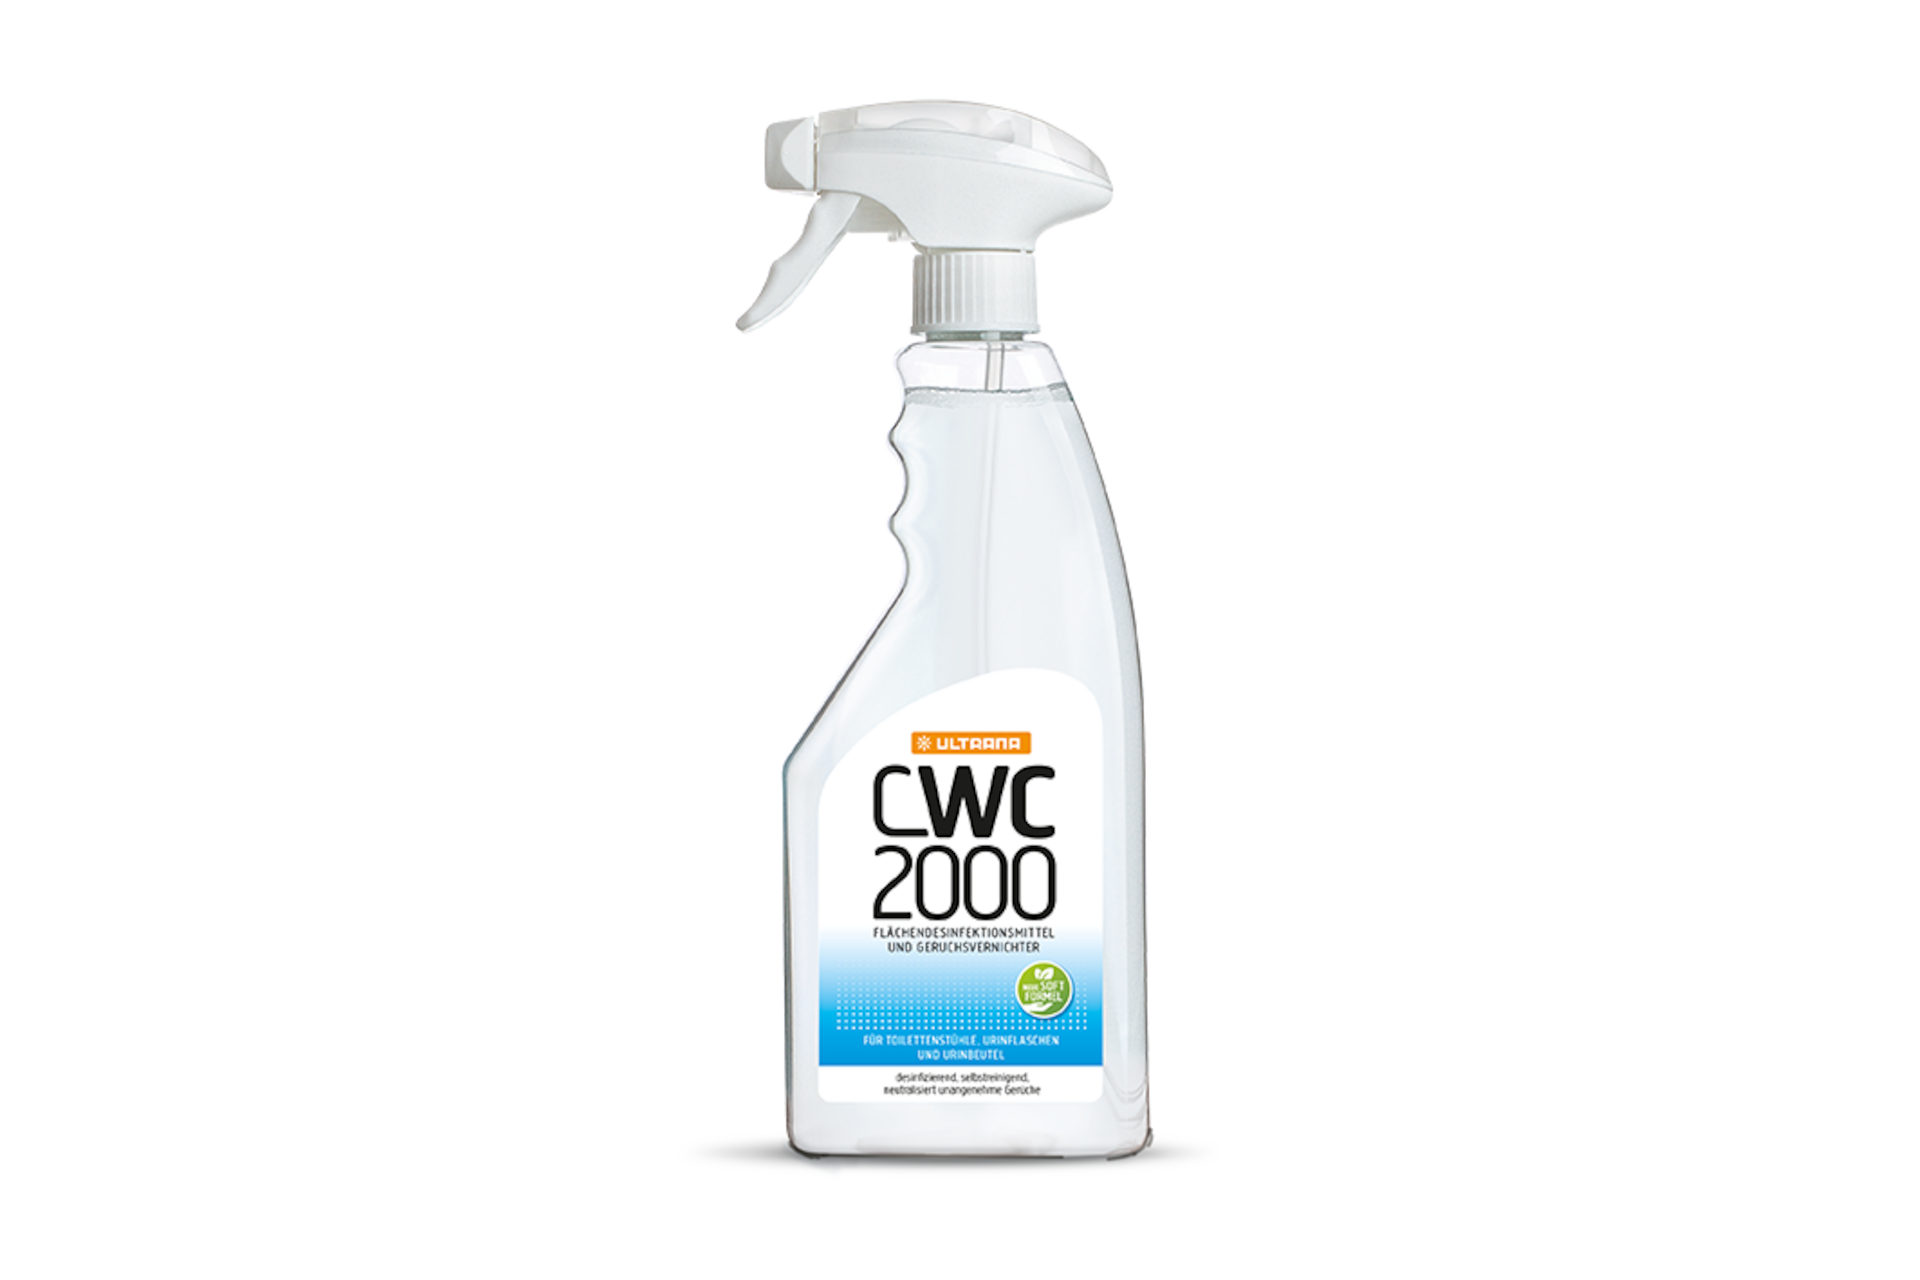 Ultrana CWC 2000 Geruchsvernichter und Flächendesinfektion